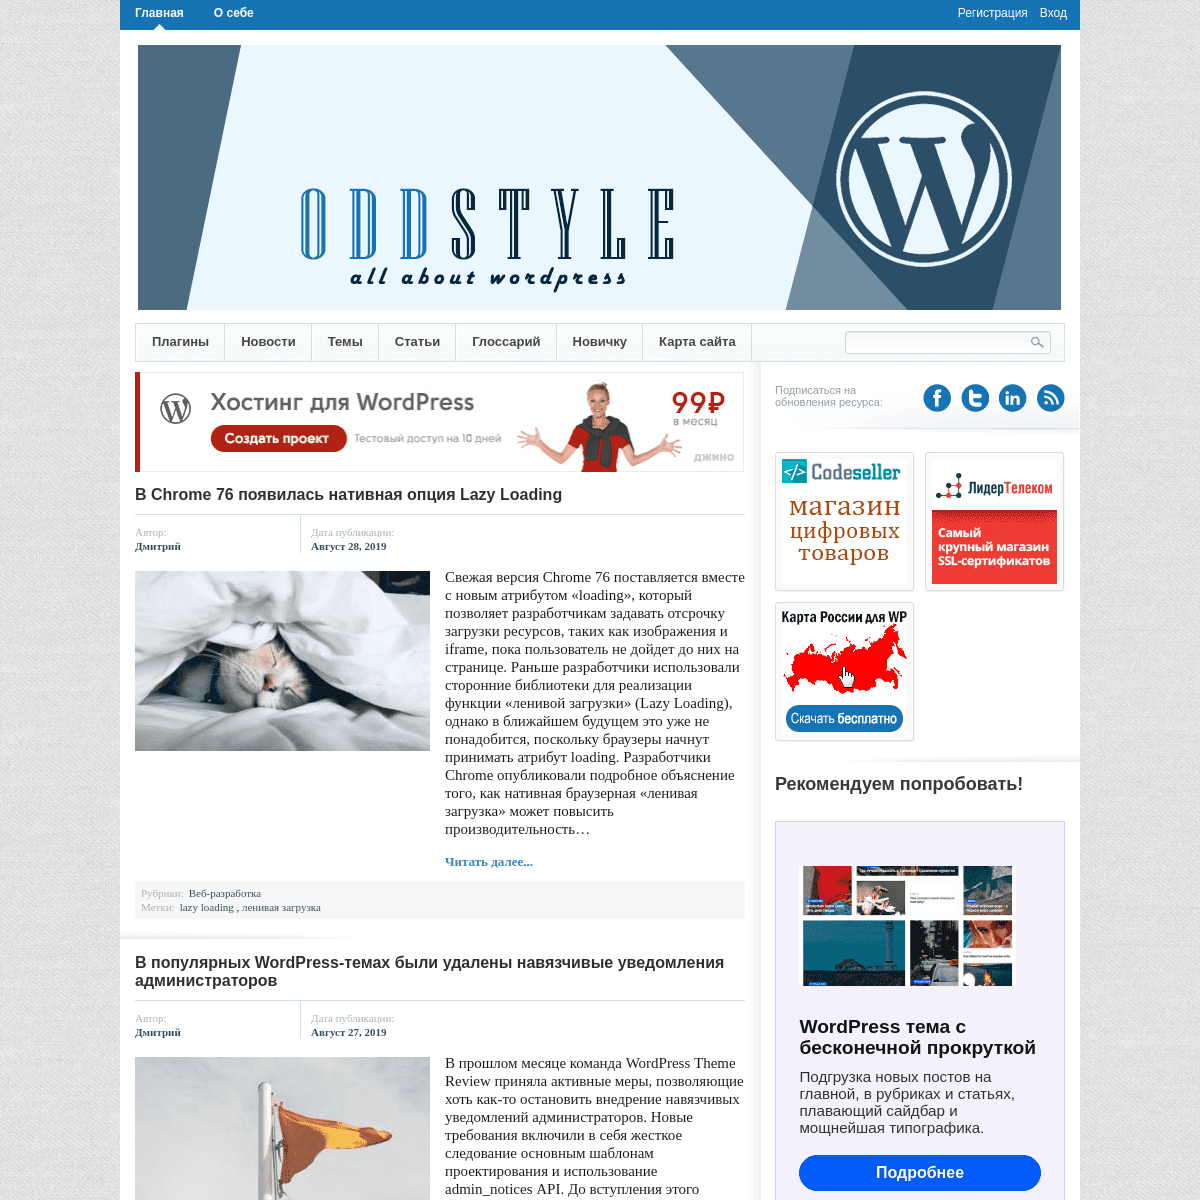 Oddstyle.ru – все о WordPress | Блог про Wordpress. Темы, плагины, новости, статьи.